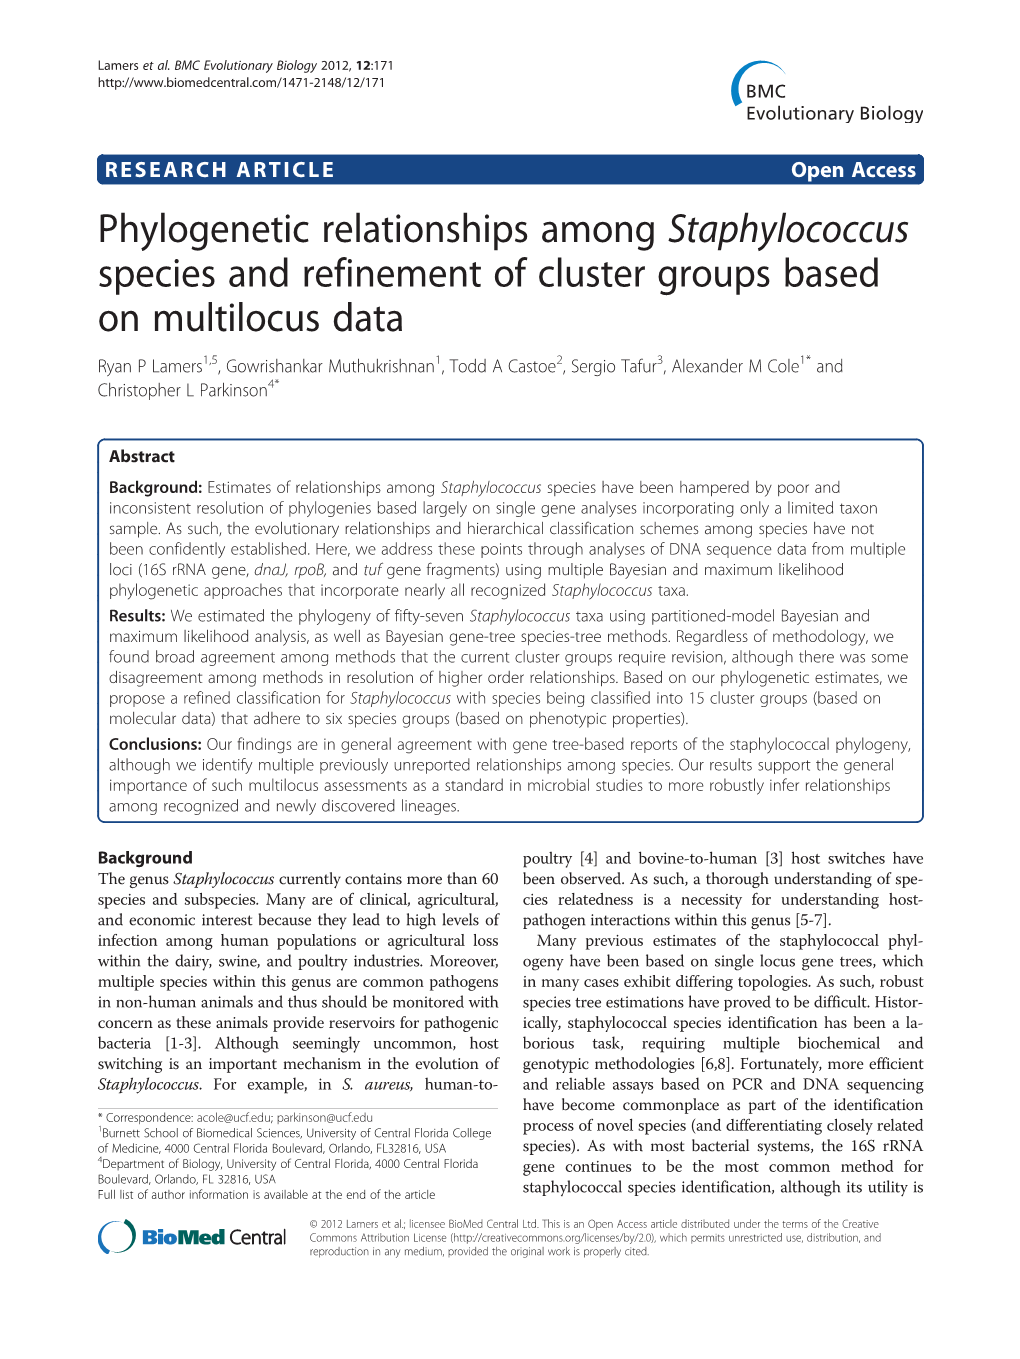 Phylogenetic Relationships Among